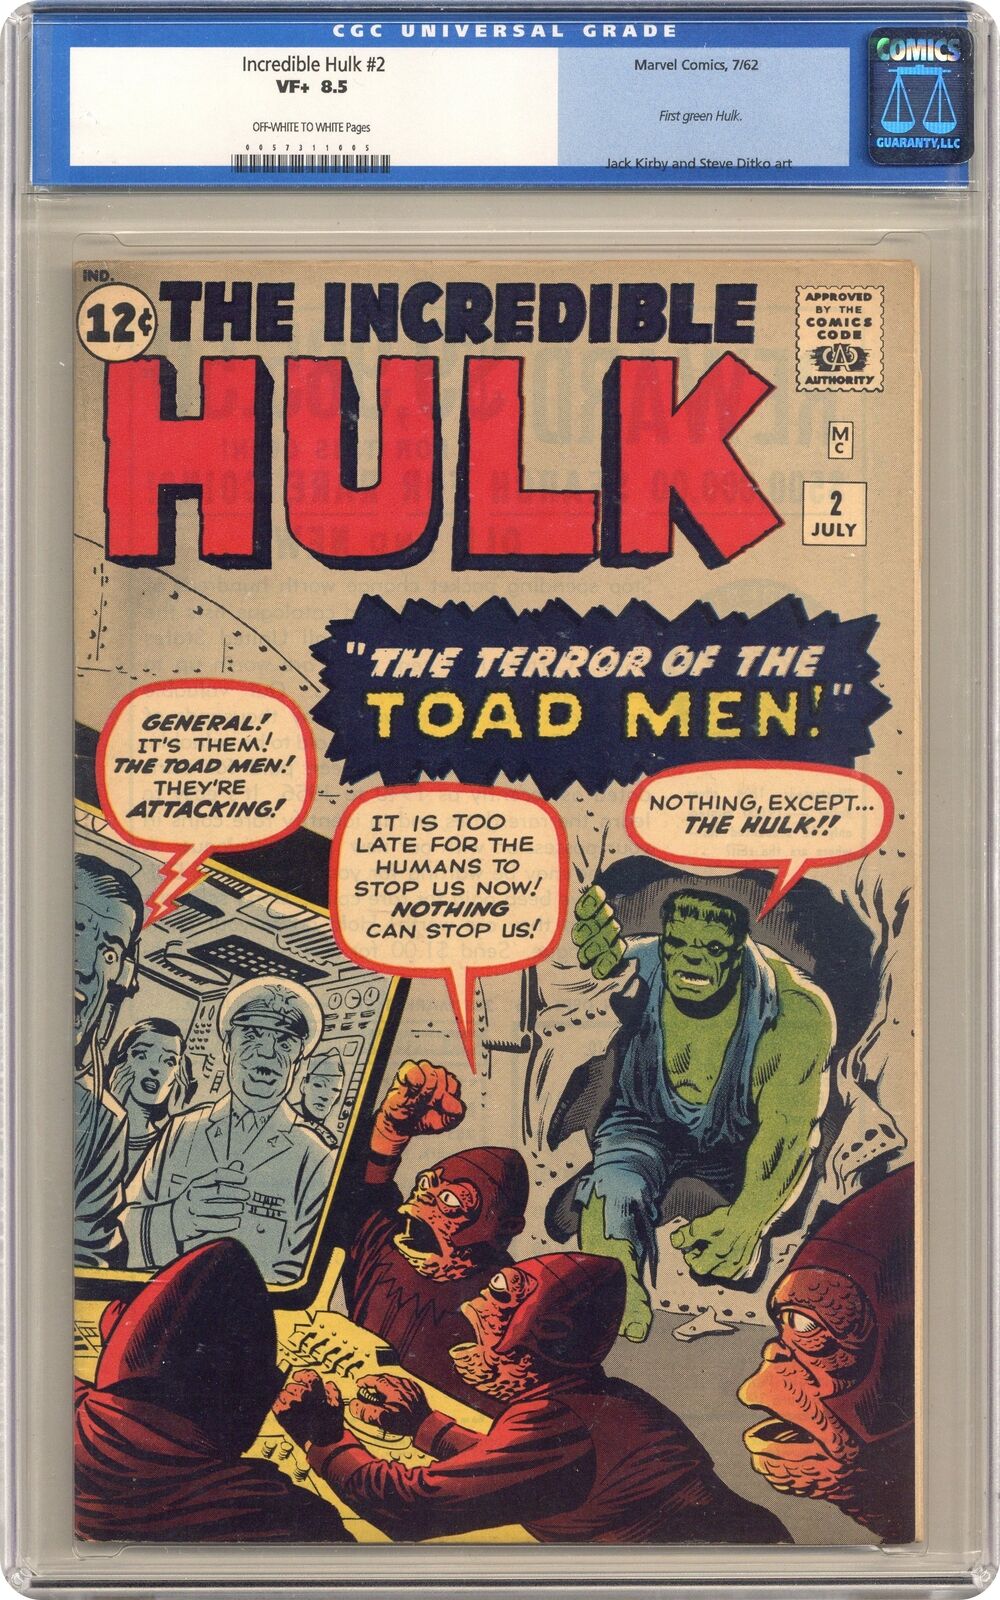 Incredible Hulk #2 CGC 8.5 1962 0057311005 1st app. green Hulk